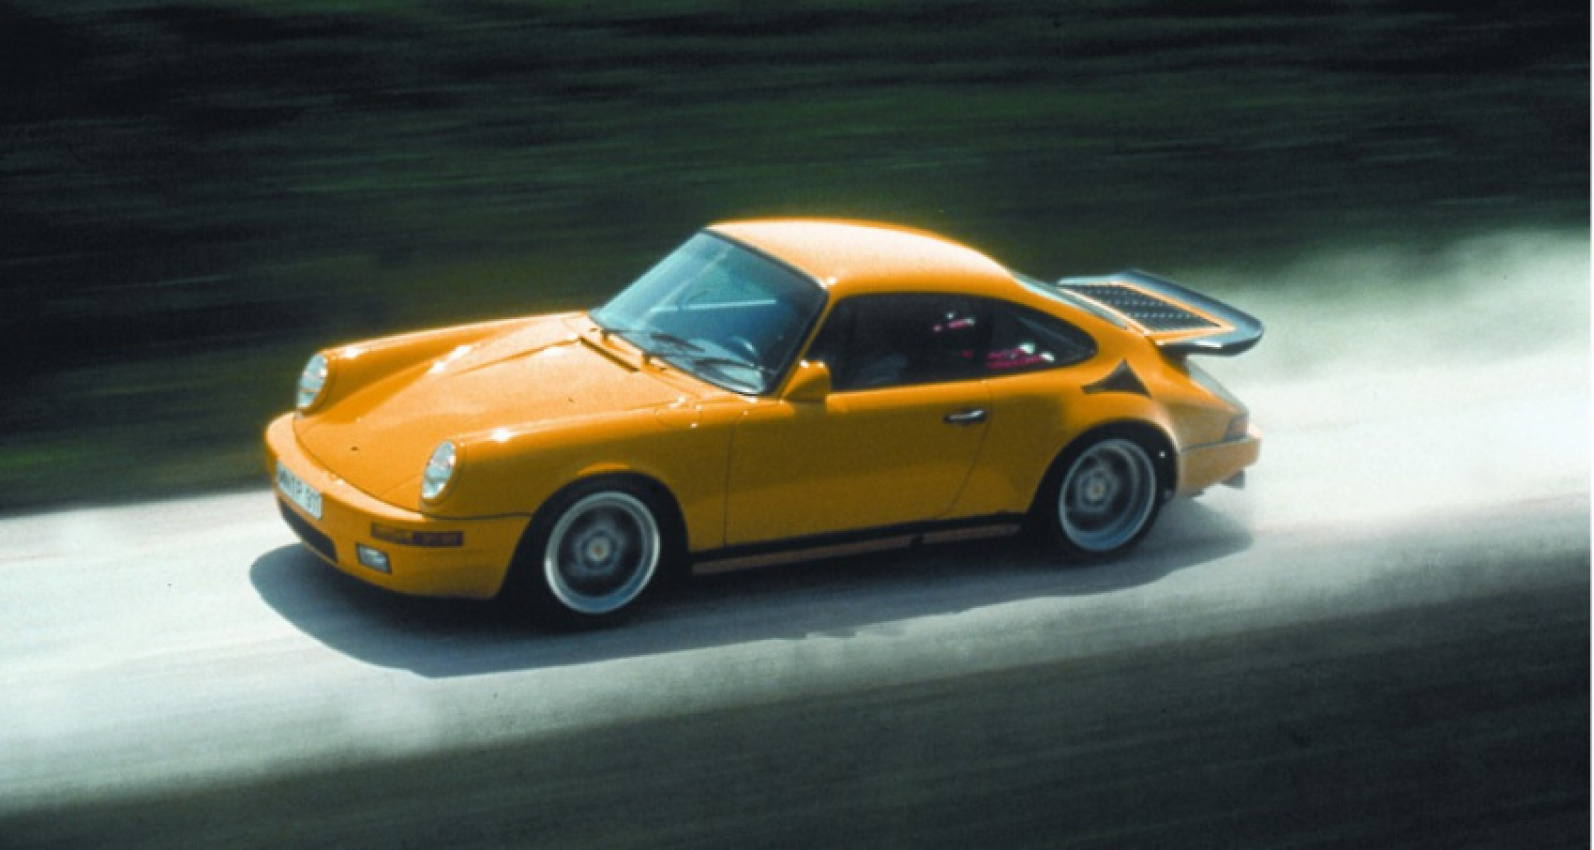 autos, cars, 100 cars that matter, classic cars, evergreen, 1987 ruf ctr yellowbird: 100 cars that matter